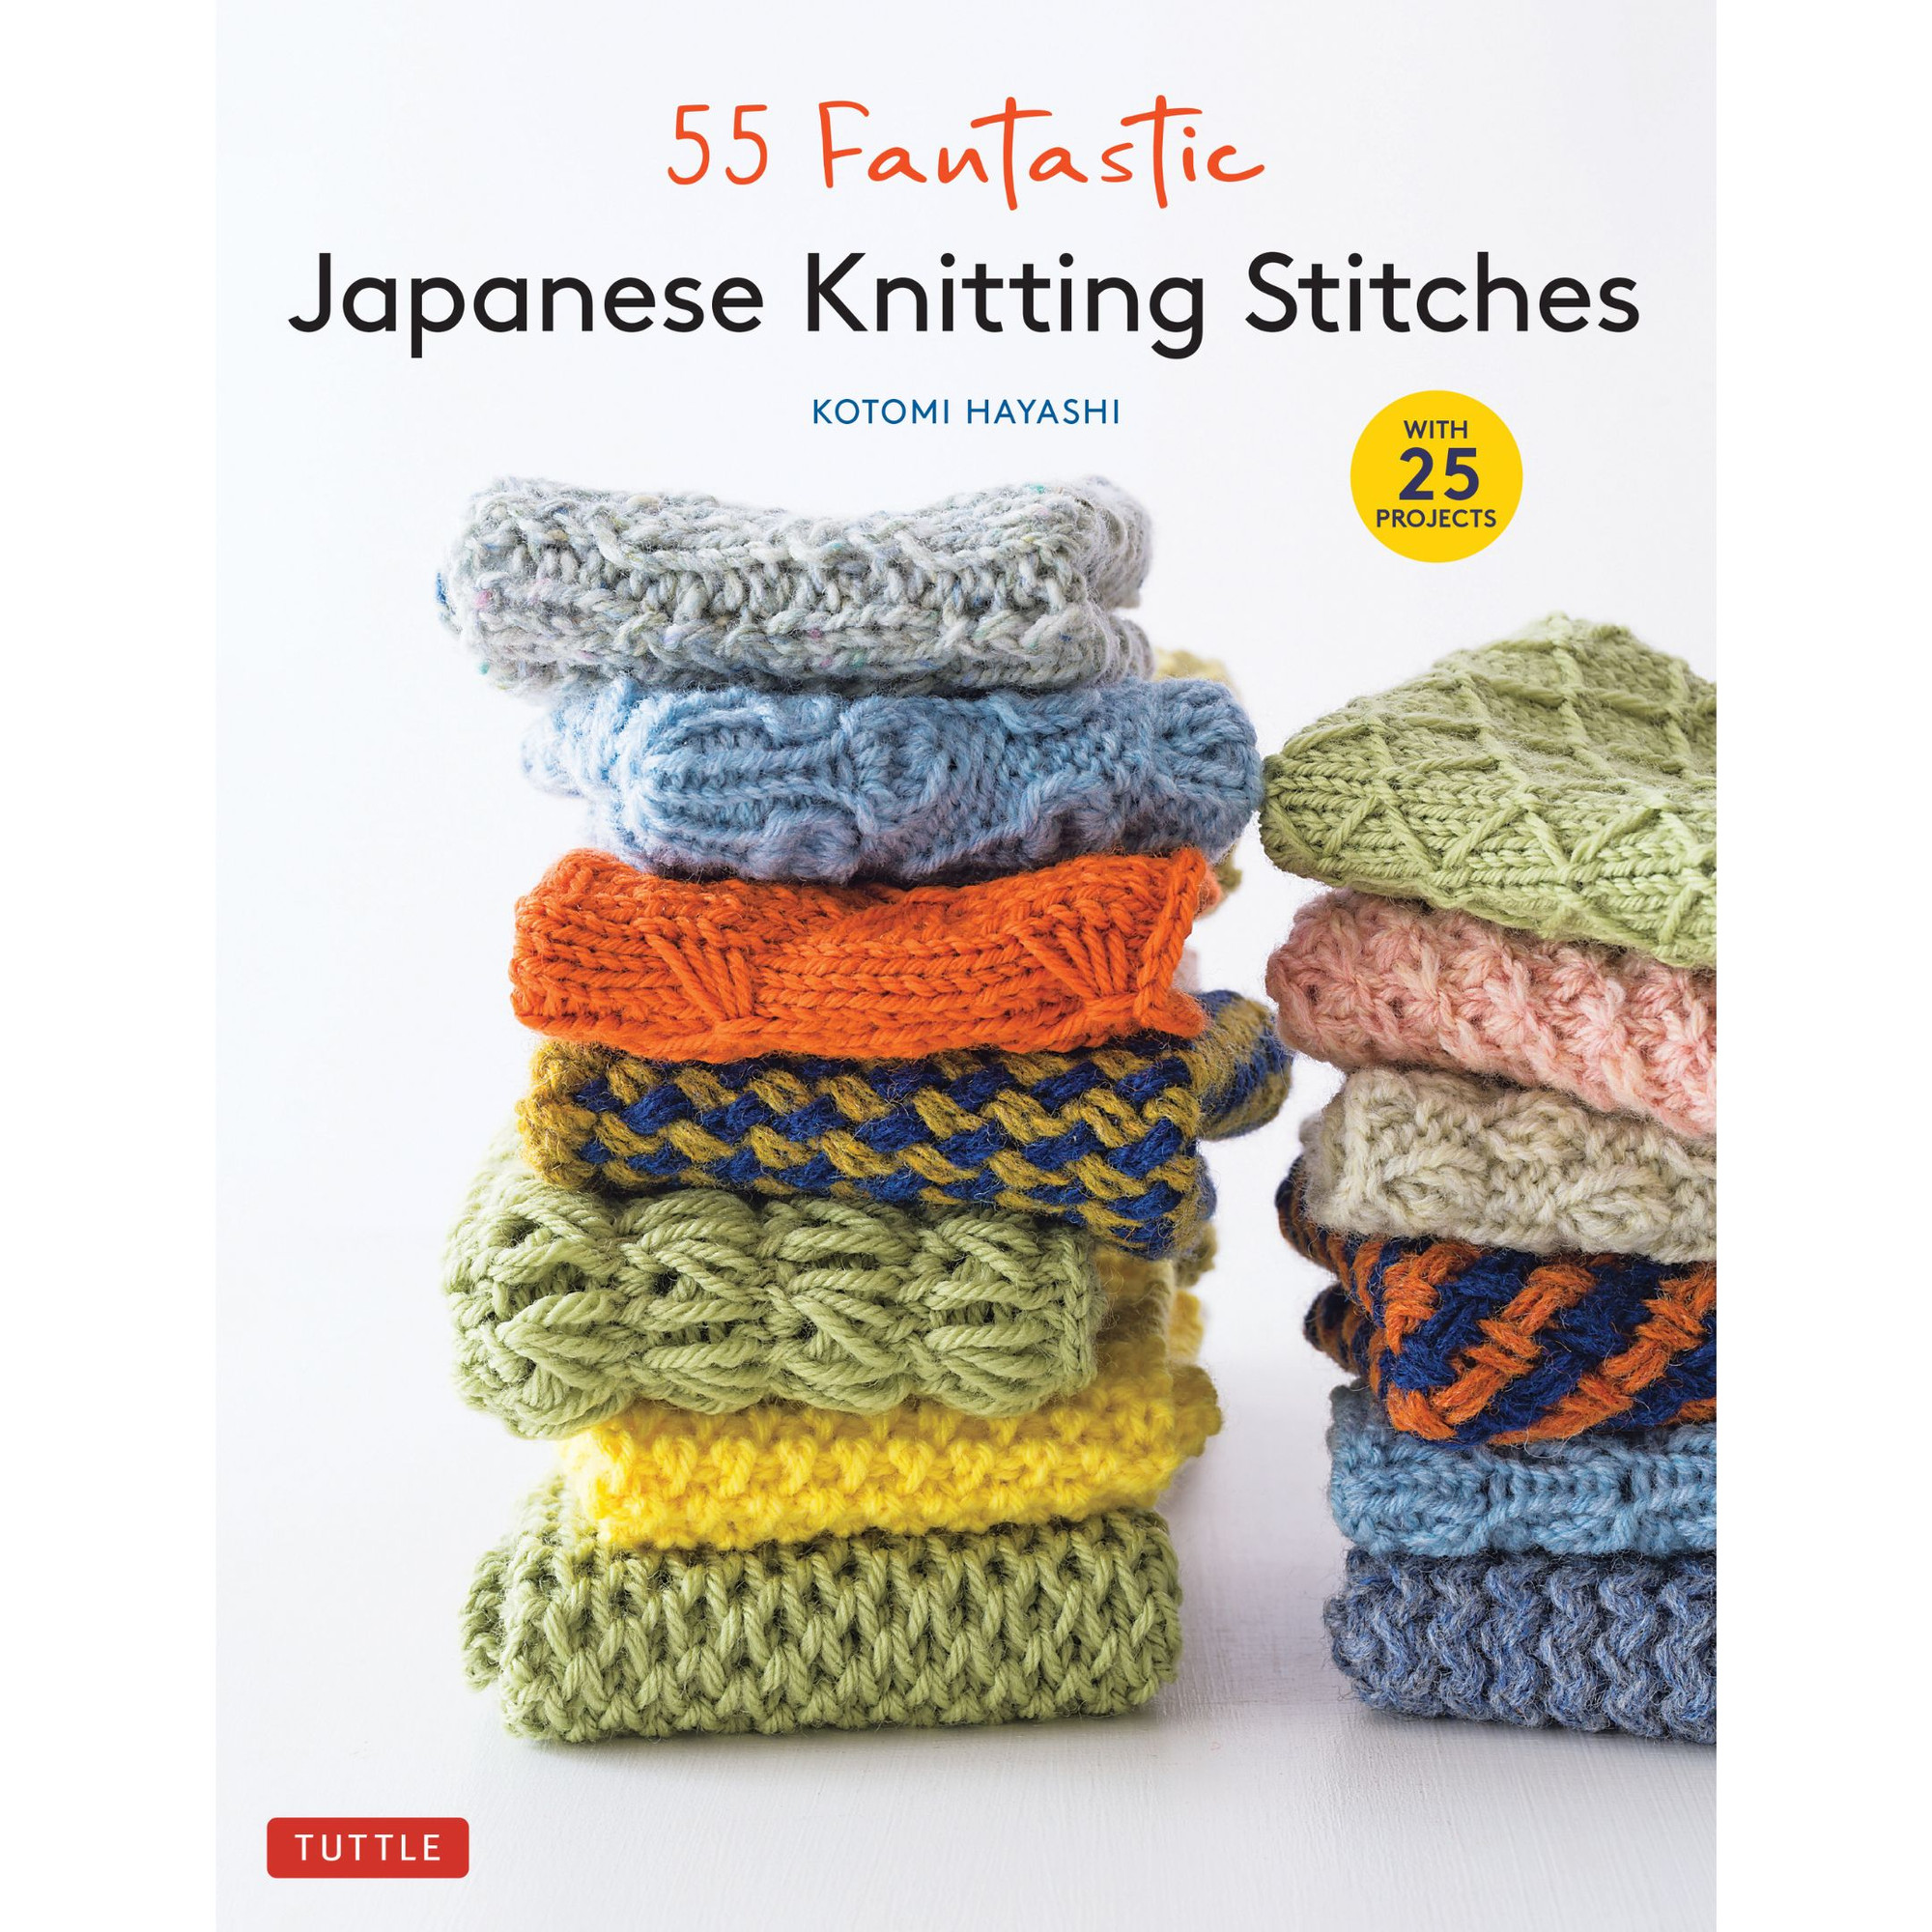 Knitting Stitch Patterns - Pretty Knitting Stitches